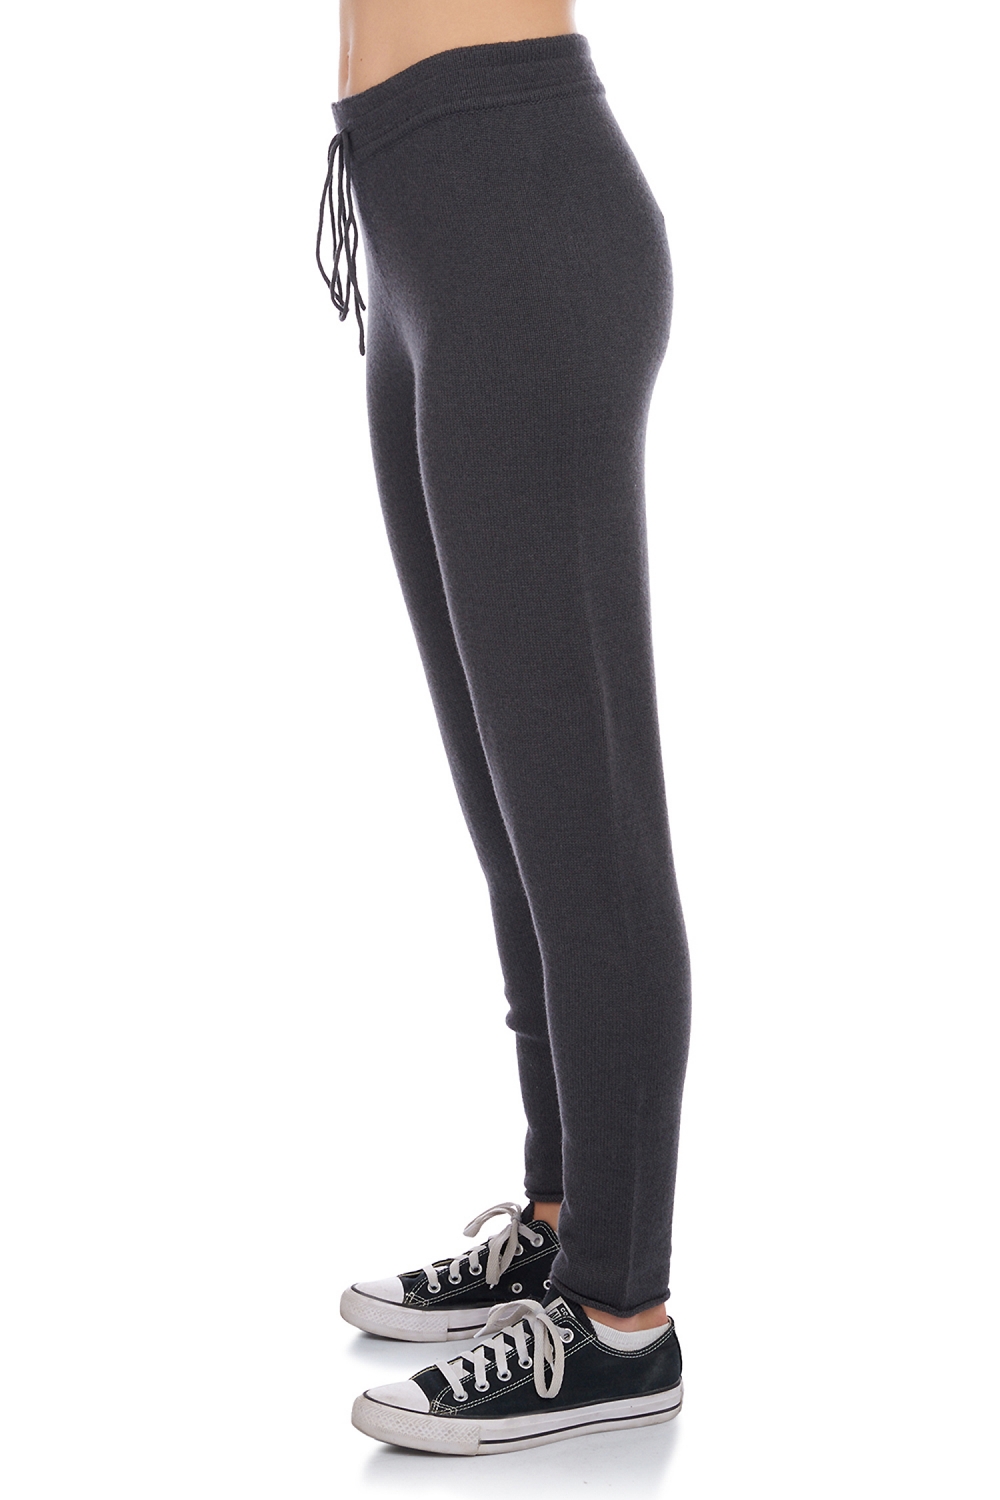 Cashmere cashmere donna pantaloni leggings arth grigio antracite 2xl